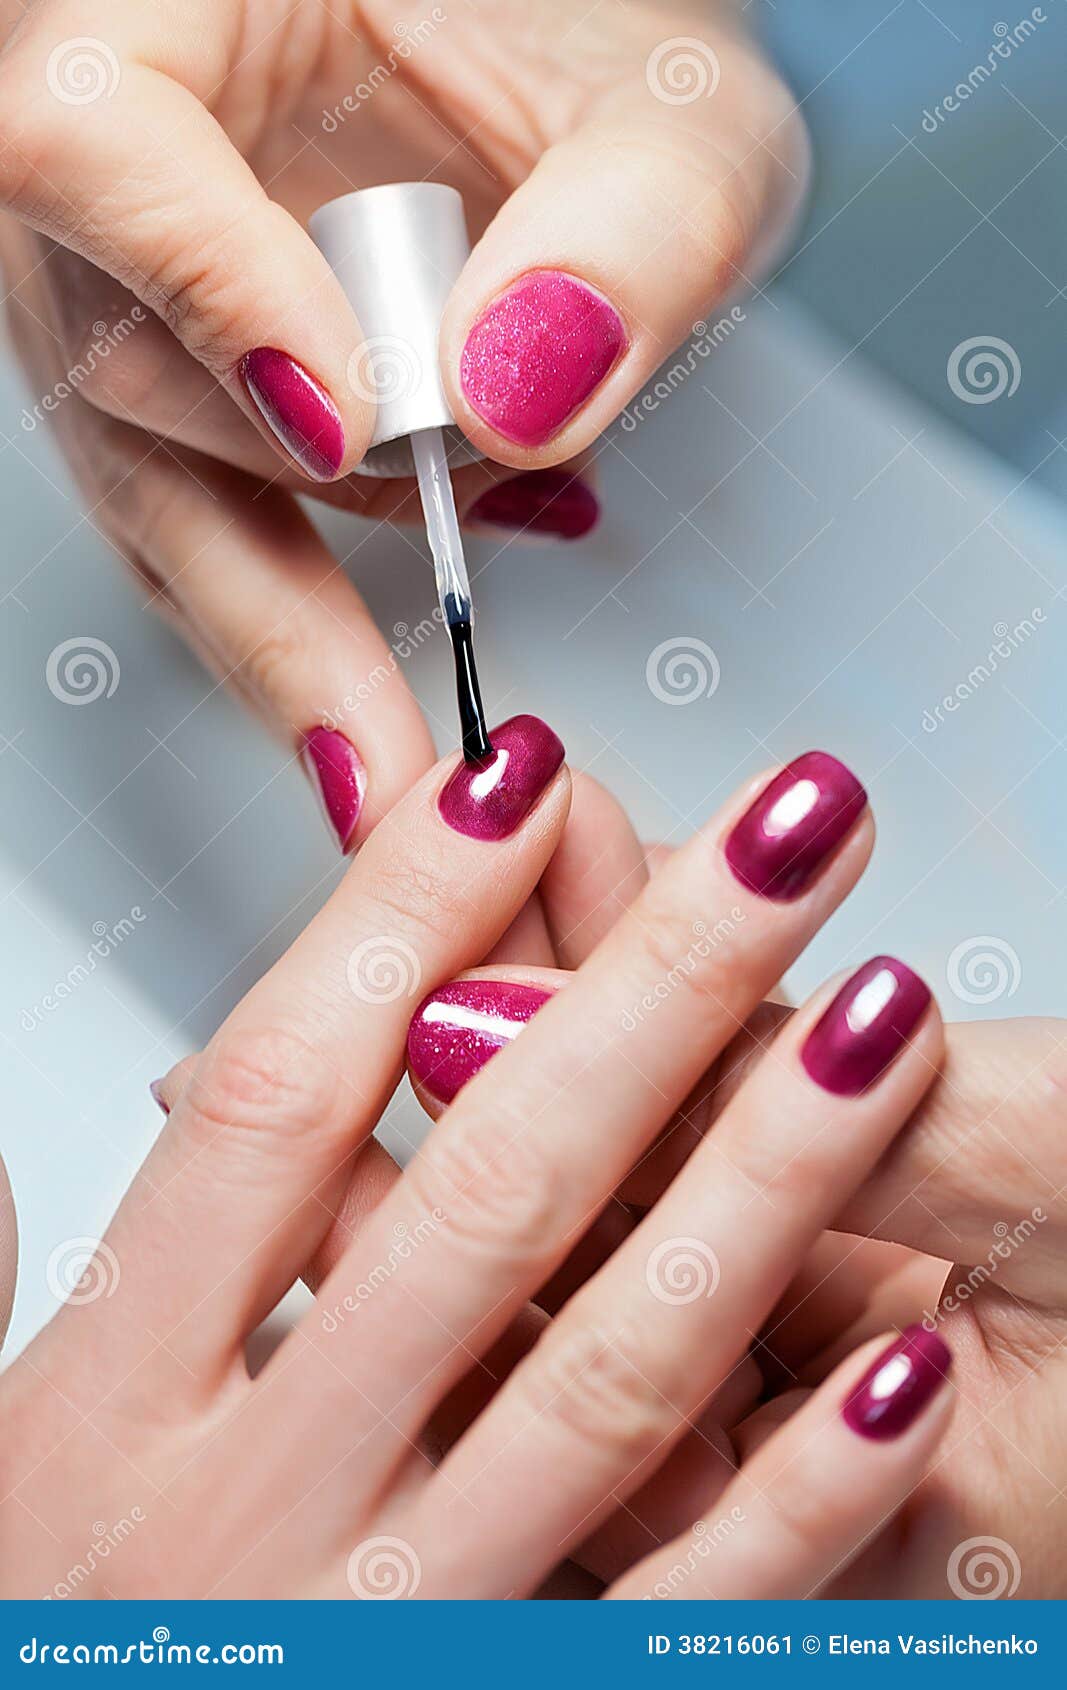 DIY Nail polish application guide. | Gel nails, Diy nails, Gel manicure  nails